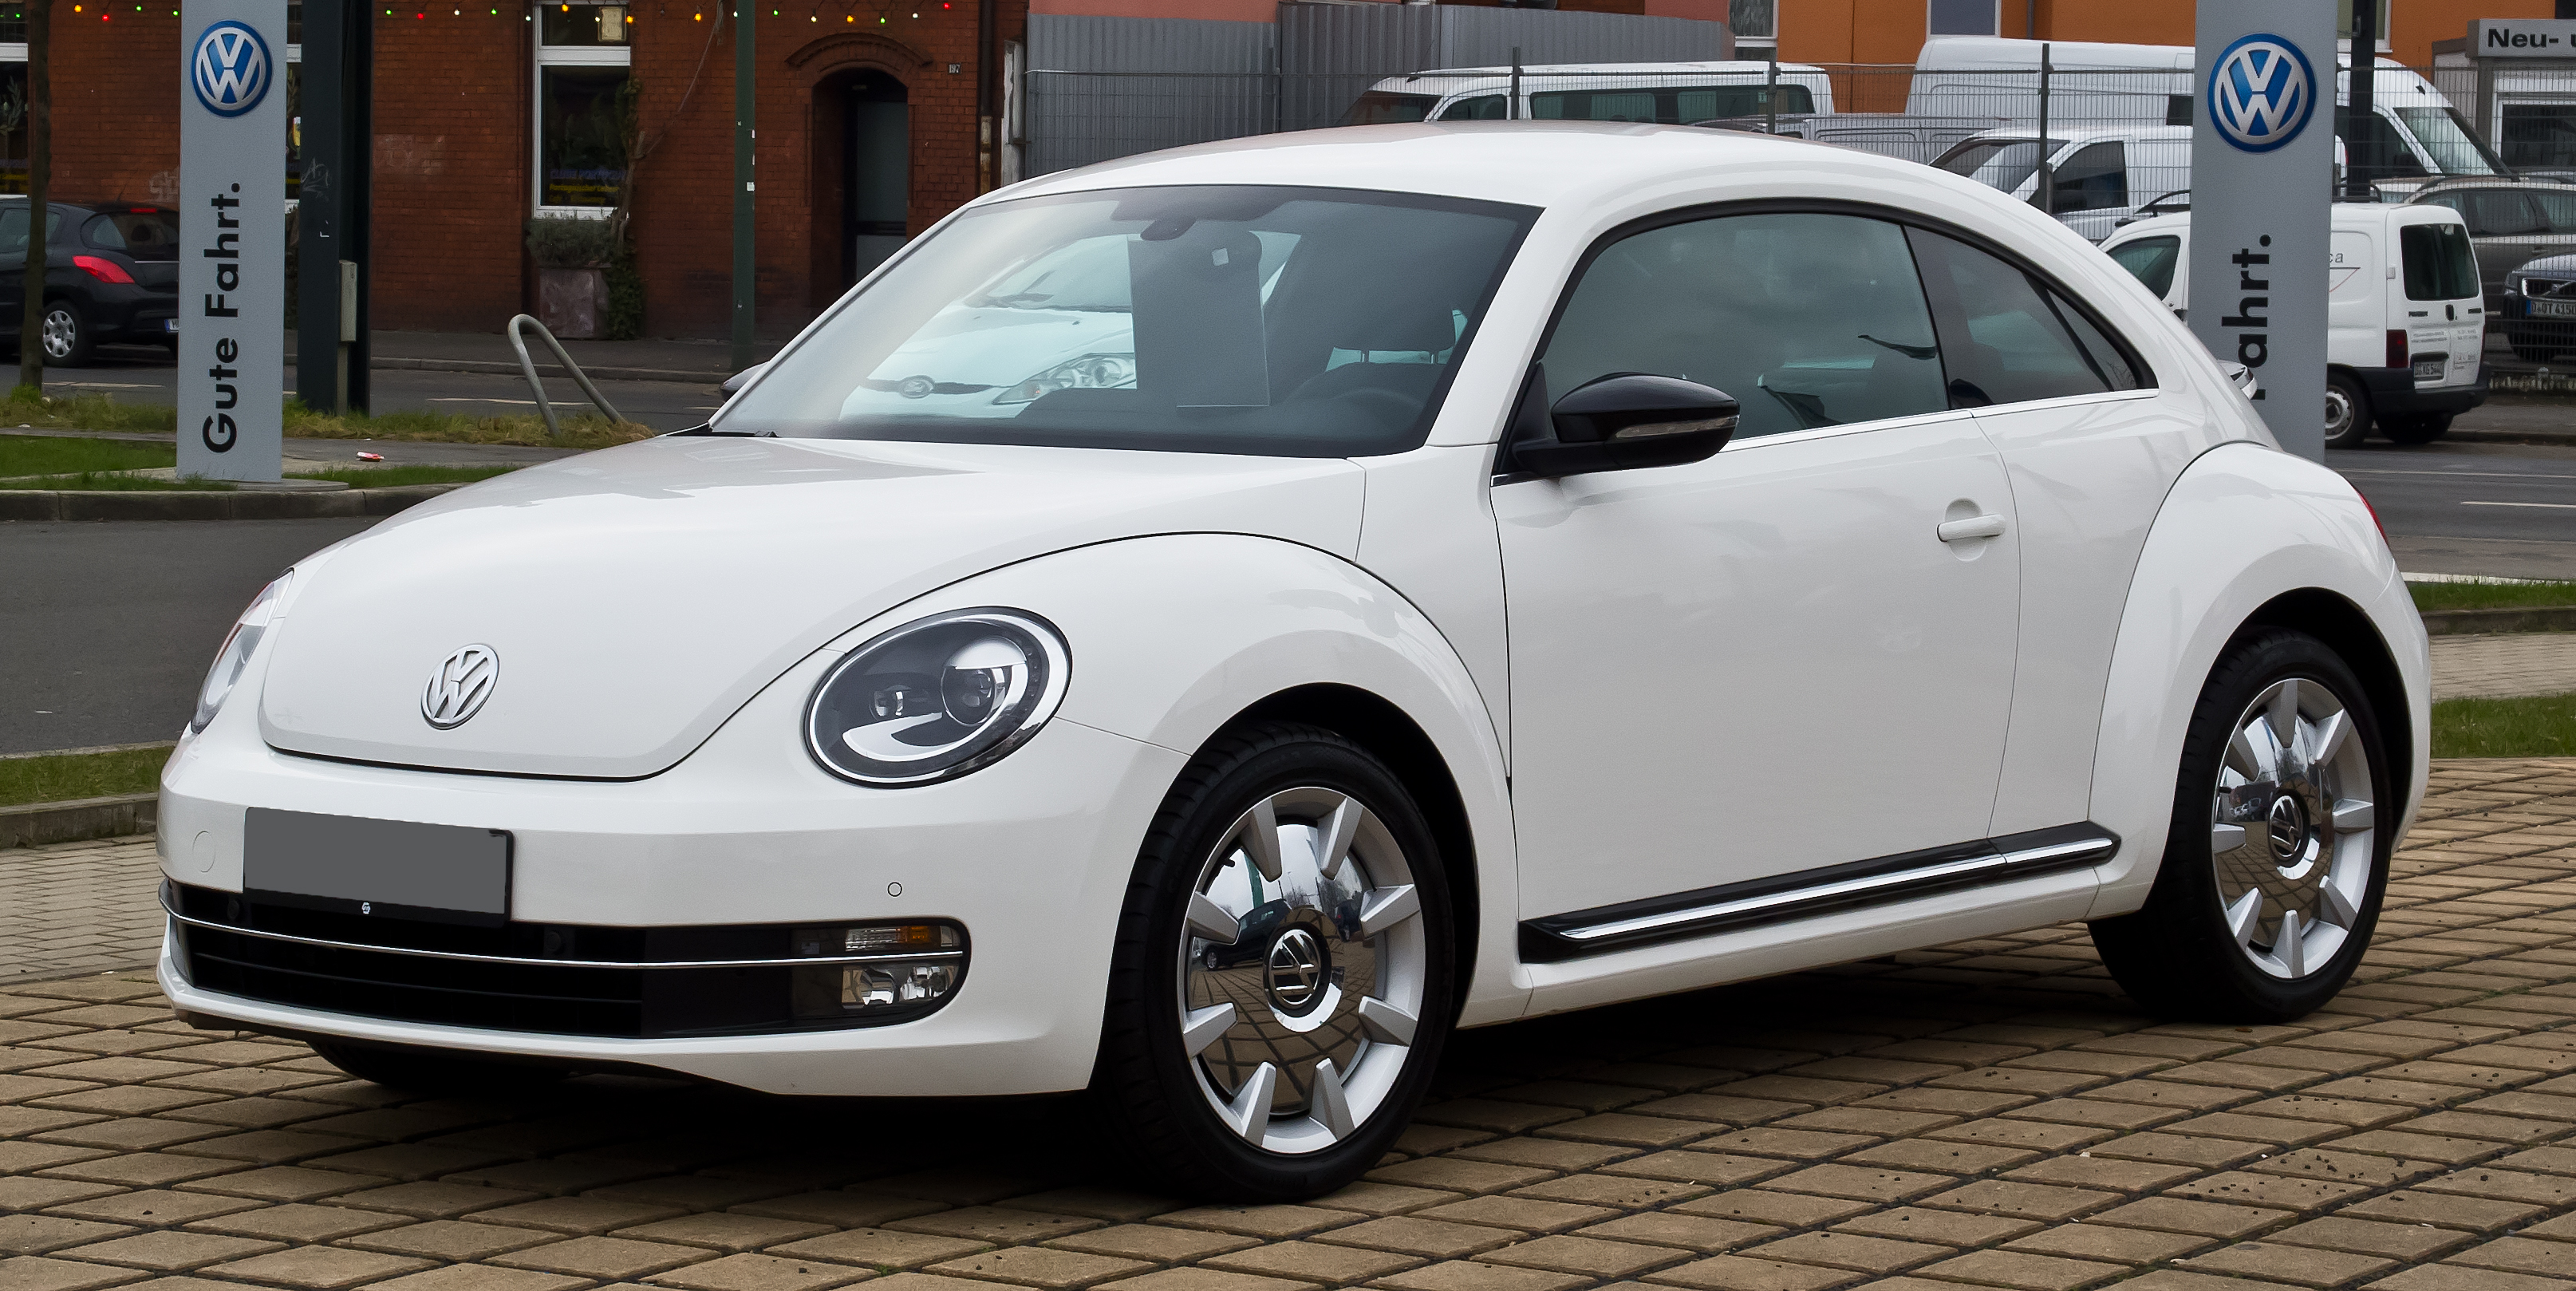 Volkswagen Beetle Backgrounds on Wallpapers Vista